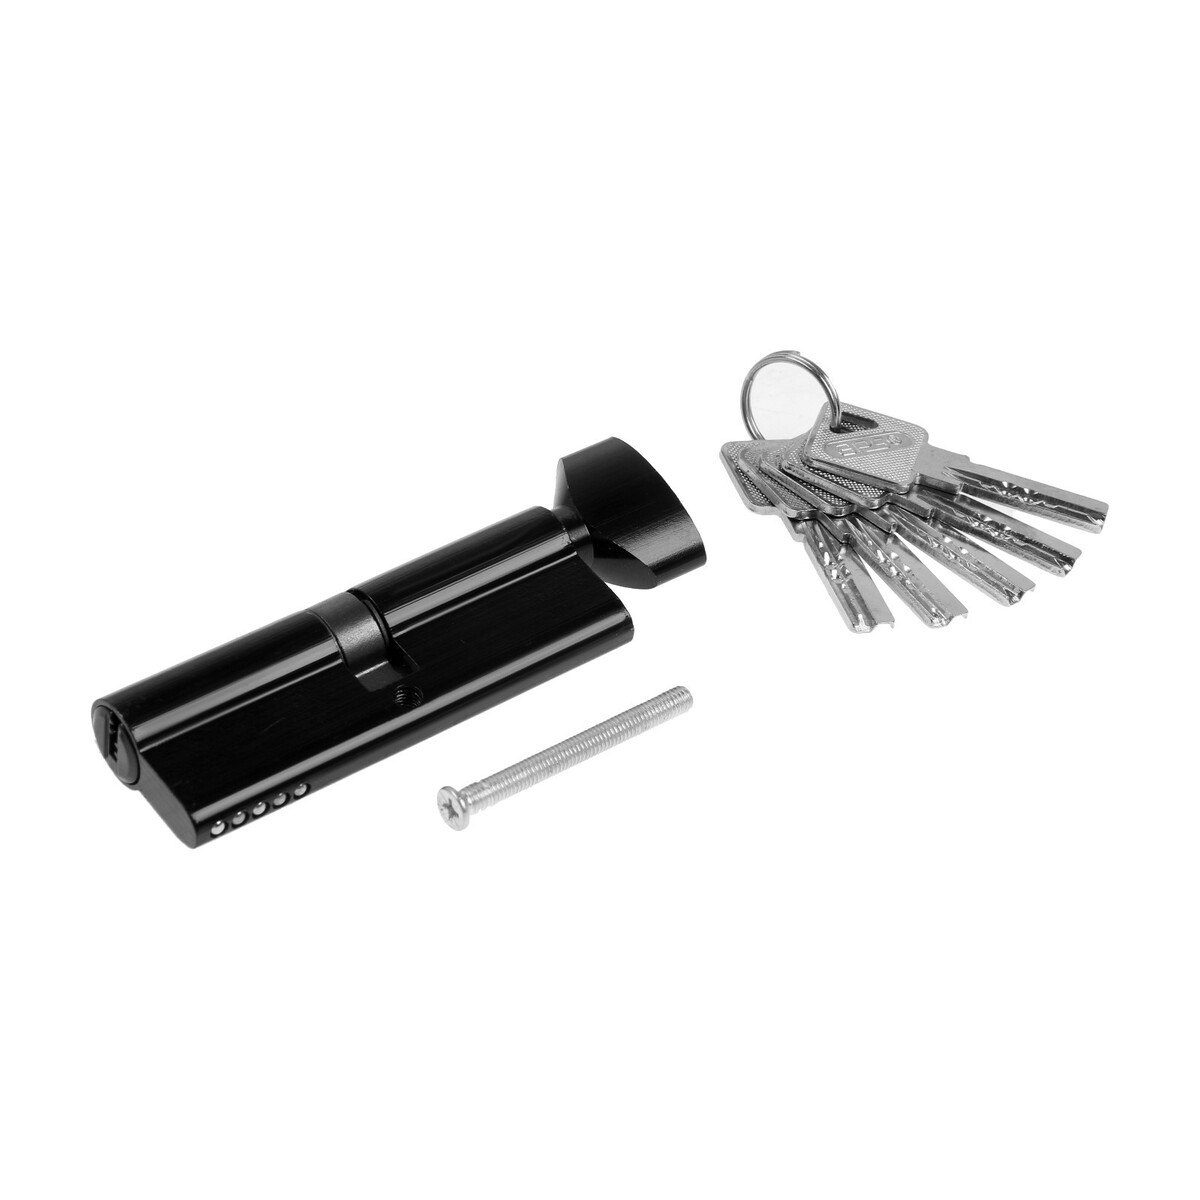 Цилиндровый механизм, 90 мм, с вертушкой, перфорированный ключ, 5 ключей, цвет черный замок навесной аллюр вс1ч 4506 1418 блистер цилиндровый 5 ключей